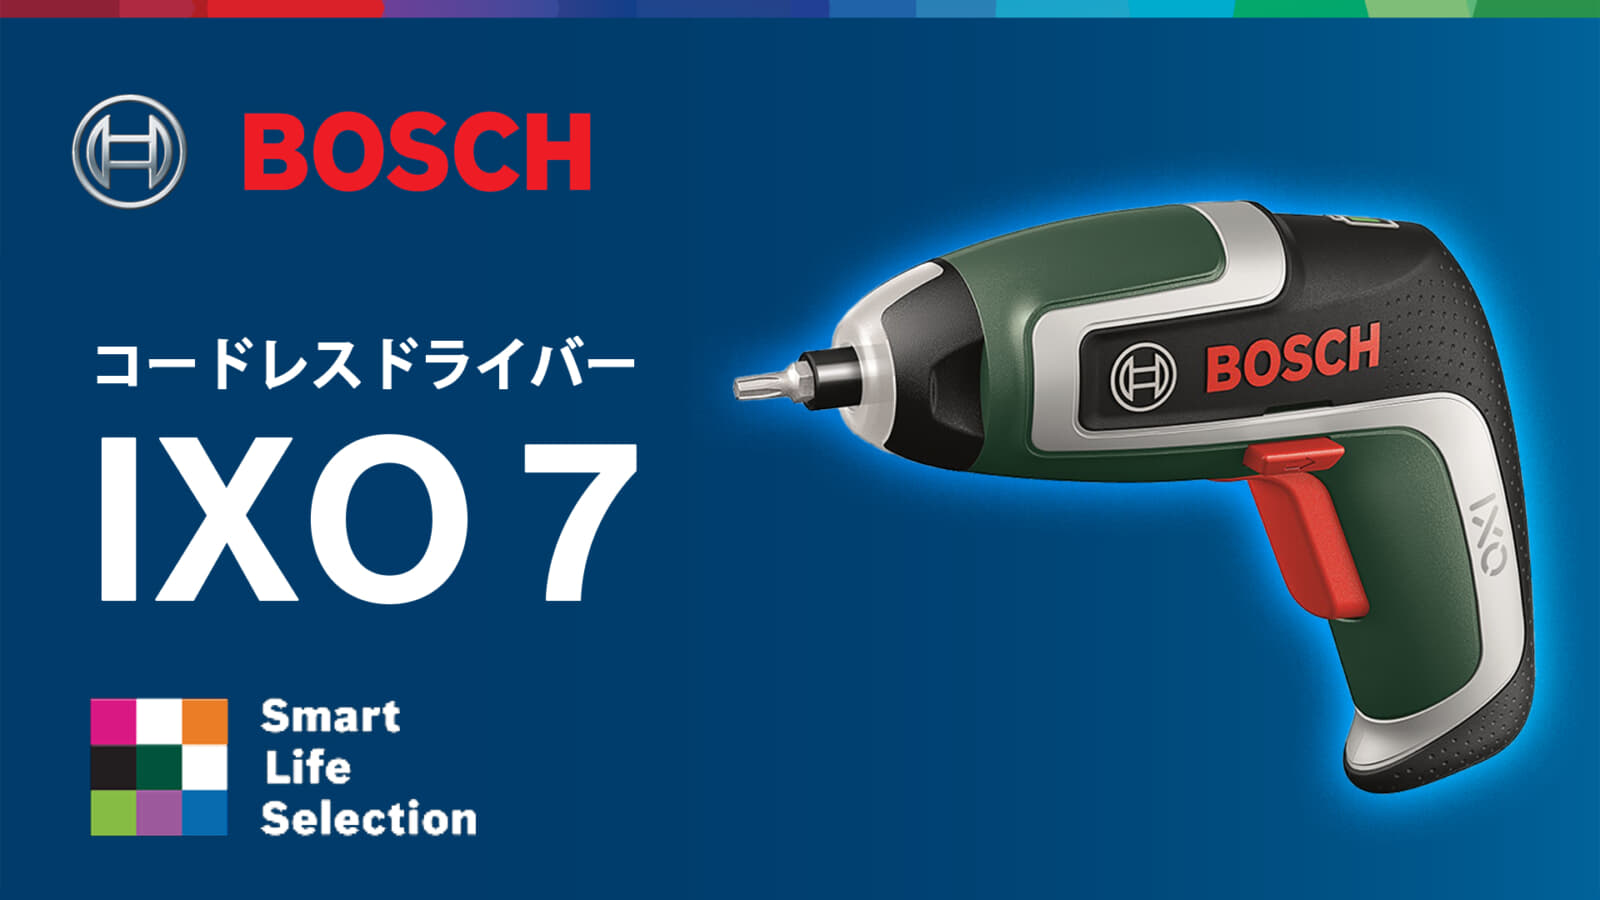 ボッシュ IXO7 コードレスドライバを発売、トルク・バッテリー容量が